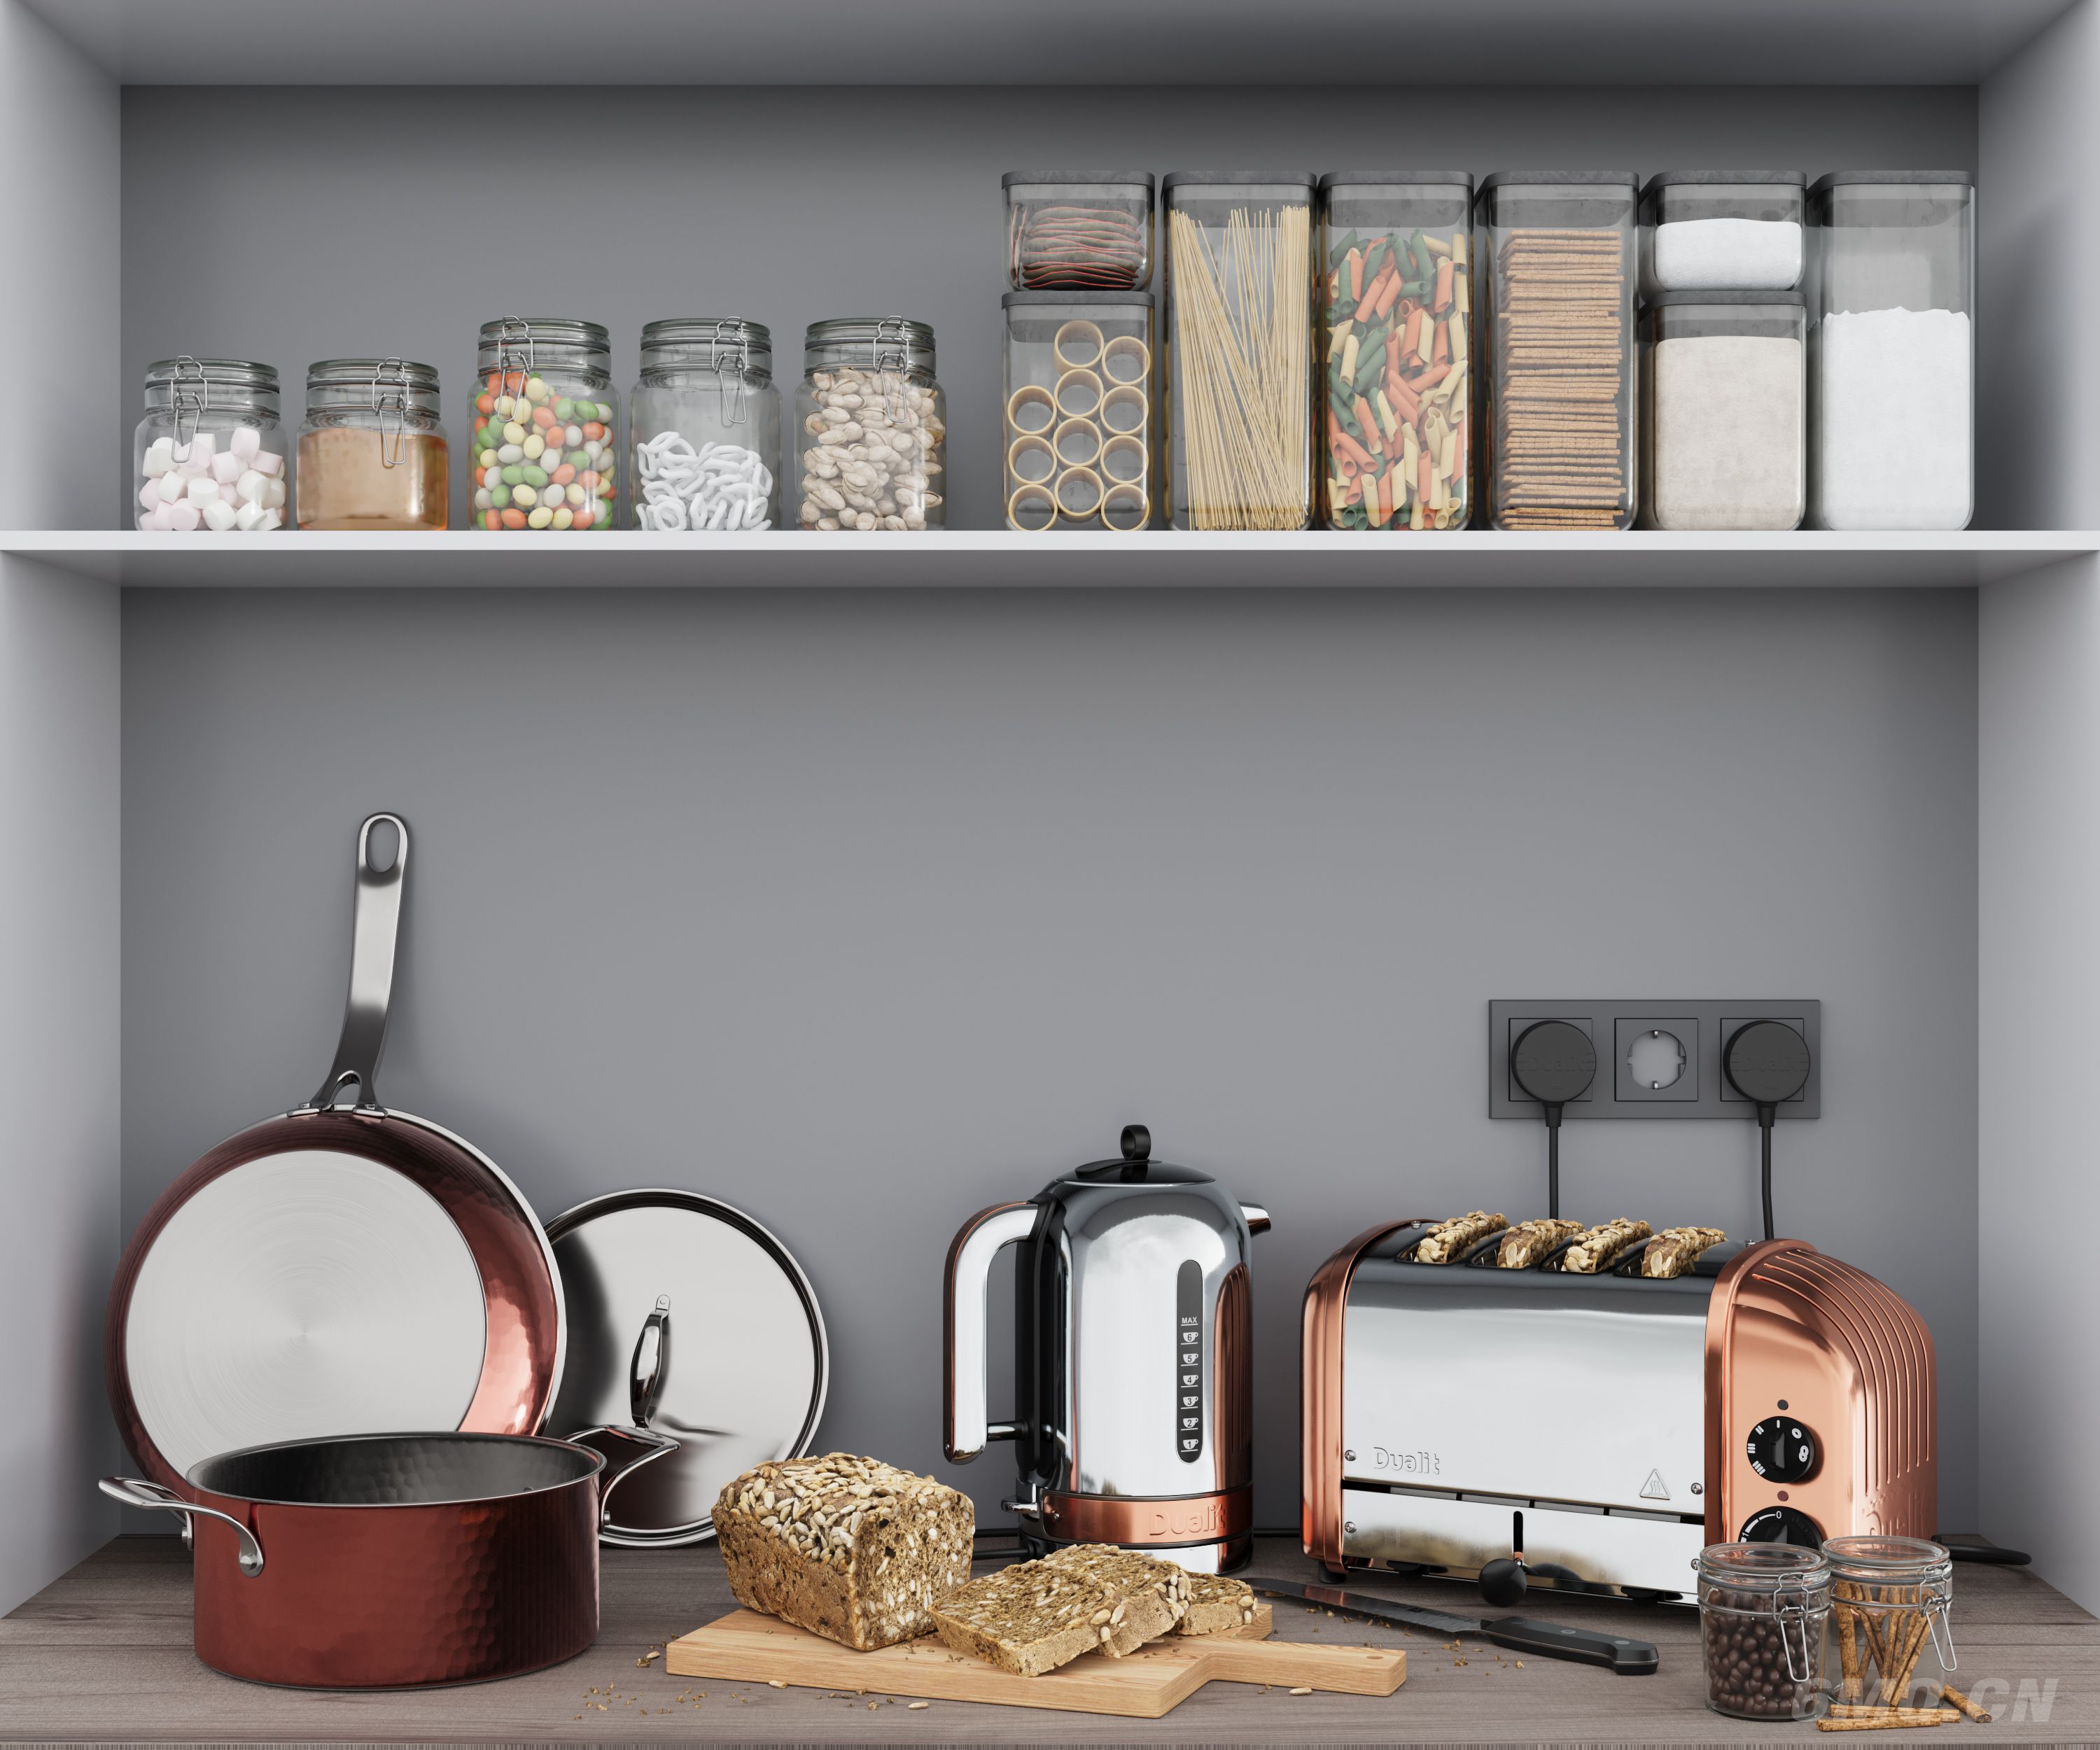 现代厨房用品 厨房用品组合 厨房摆件 厨房器具 面包机